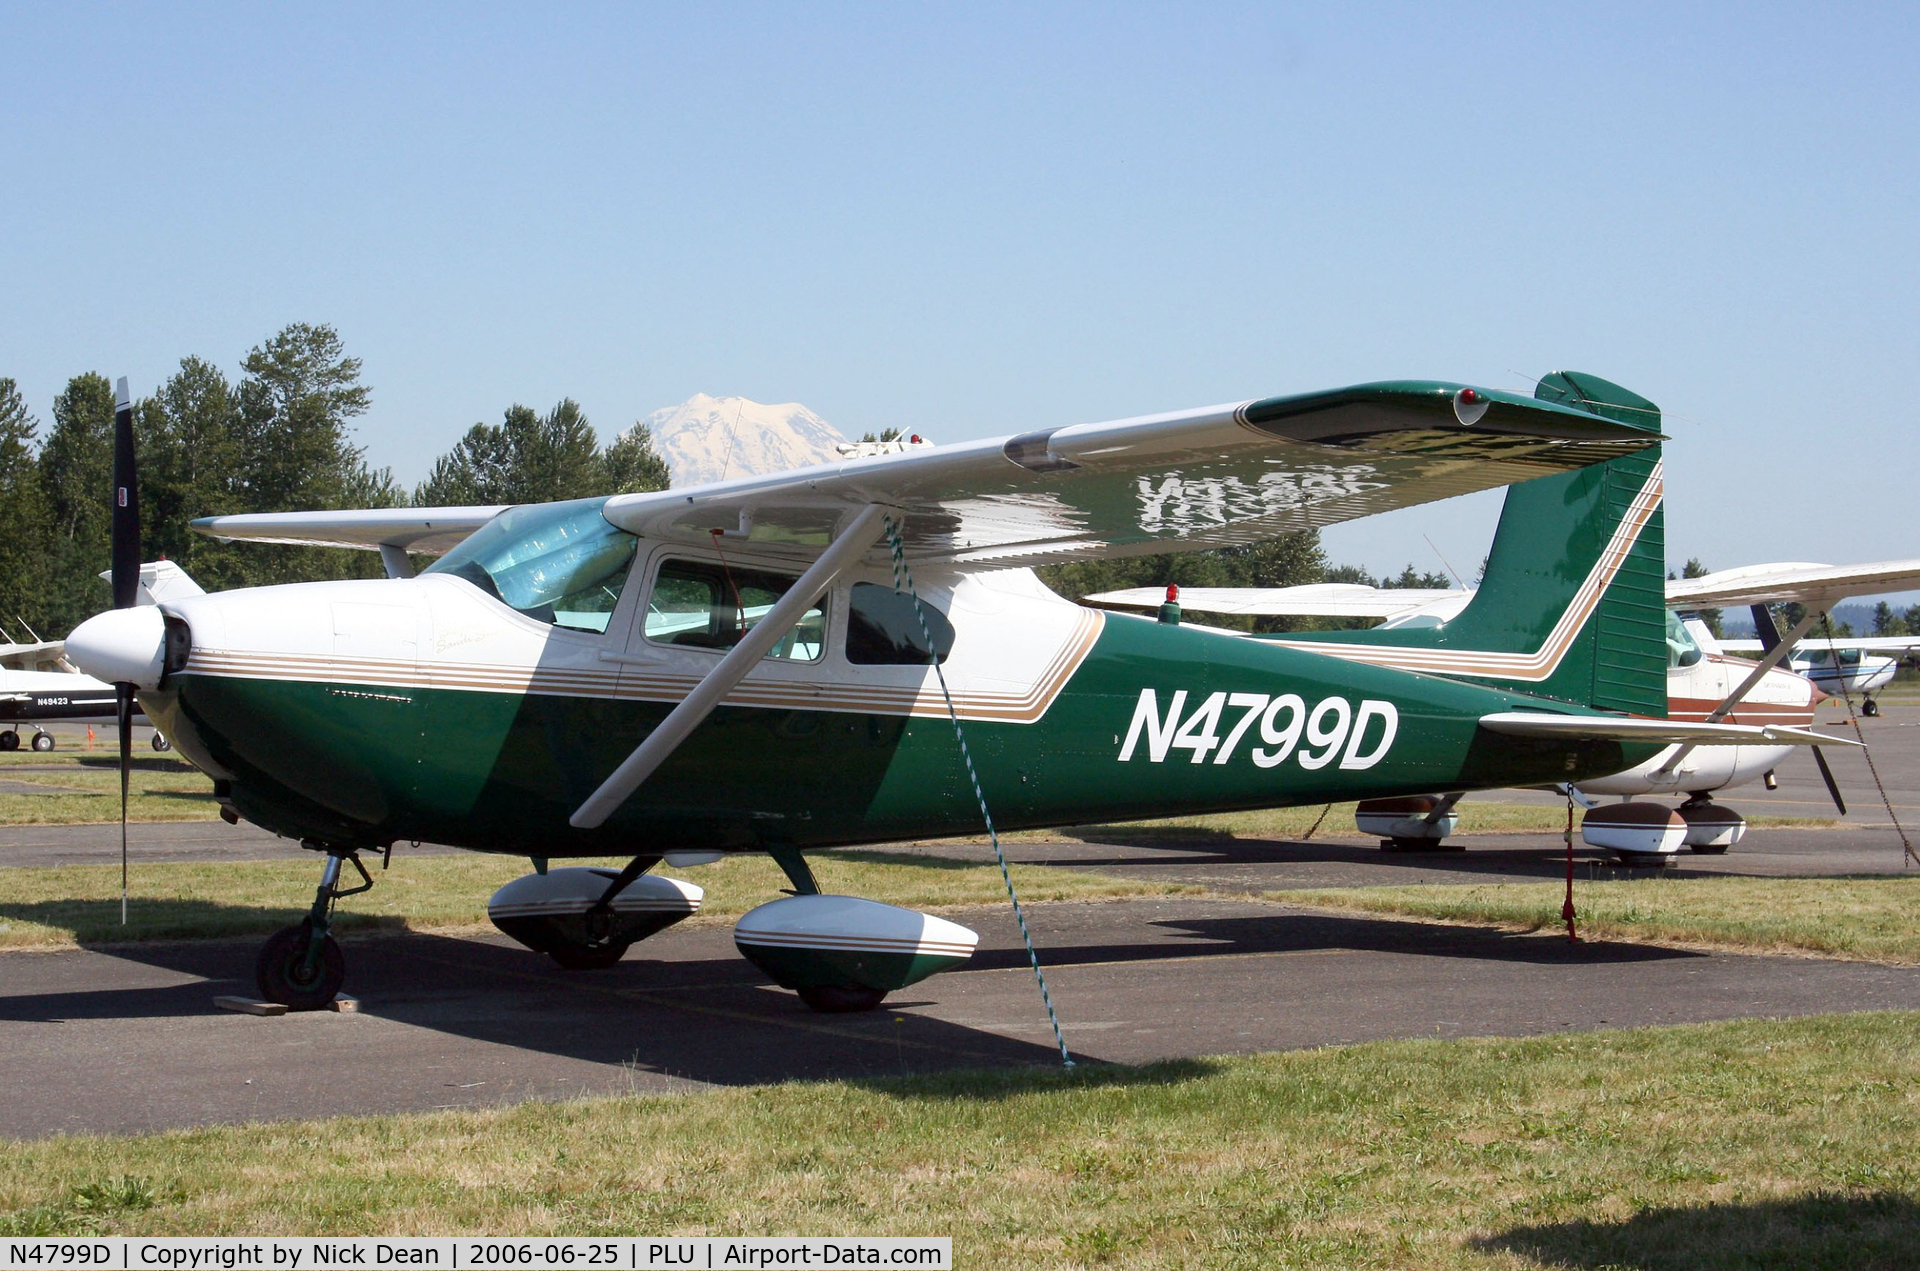 N4799D, 1958 Cessna 182A Skylane C/N 34899, Mt. Rainier 14,410' poking up behind this frame